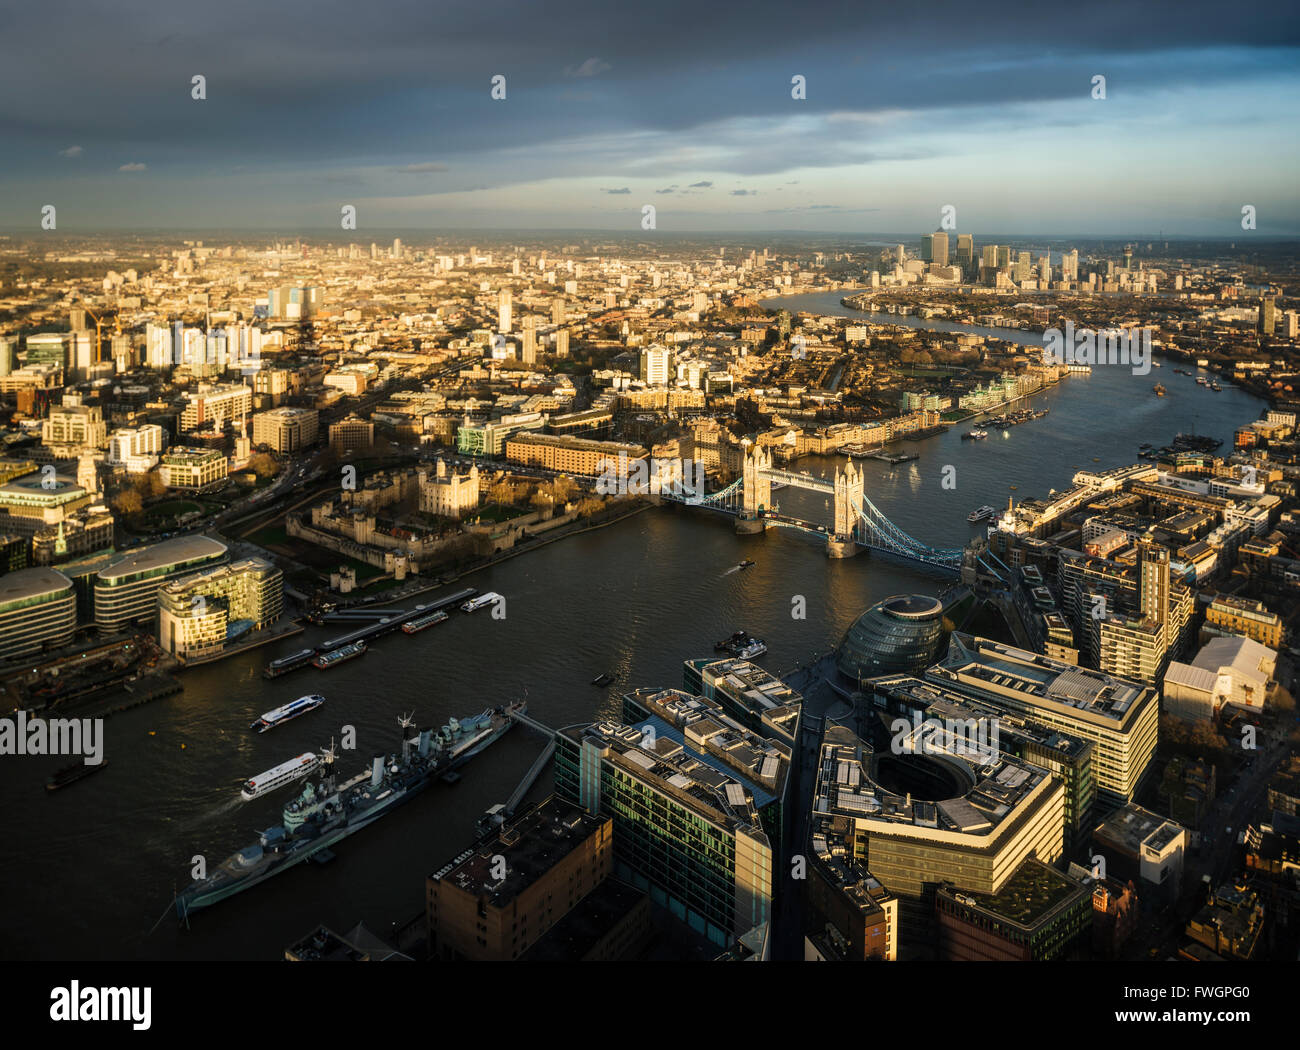 La vue depuis le tesson, Londres, Angleterre, Royaume-Uni, Europe Banque D'Images